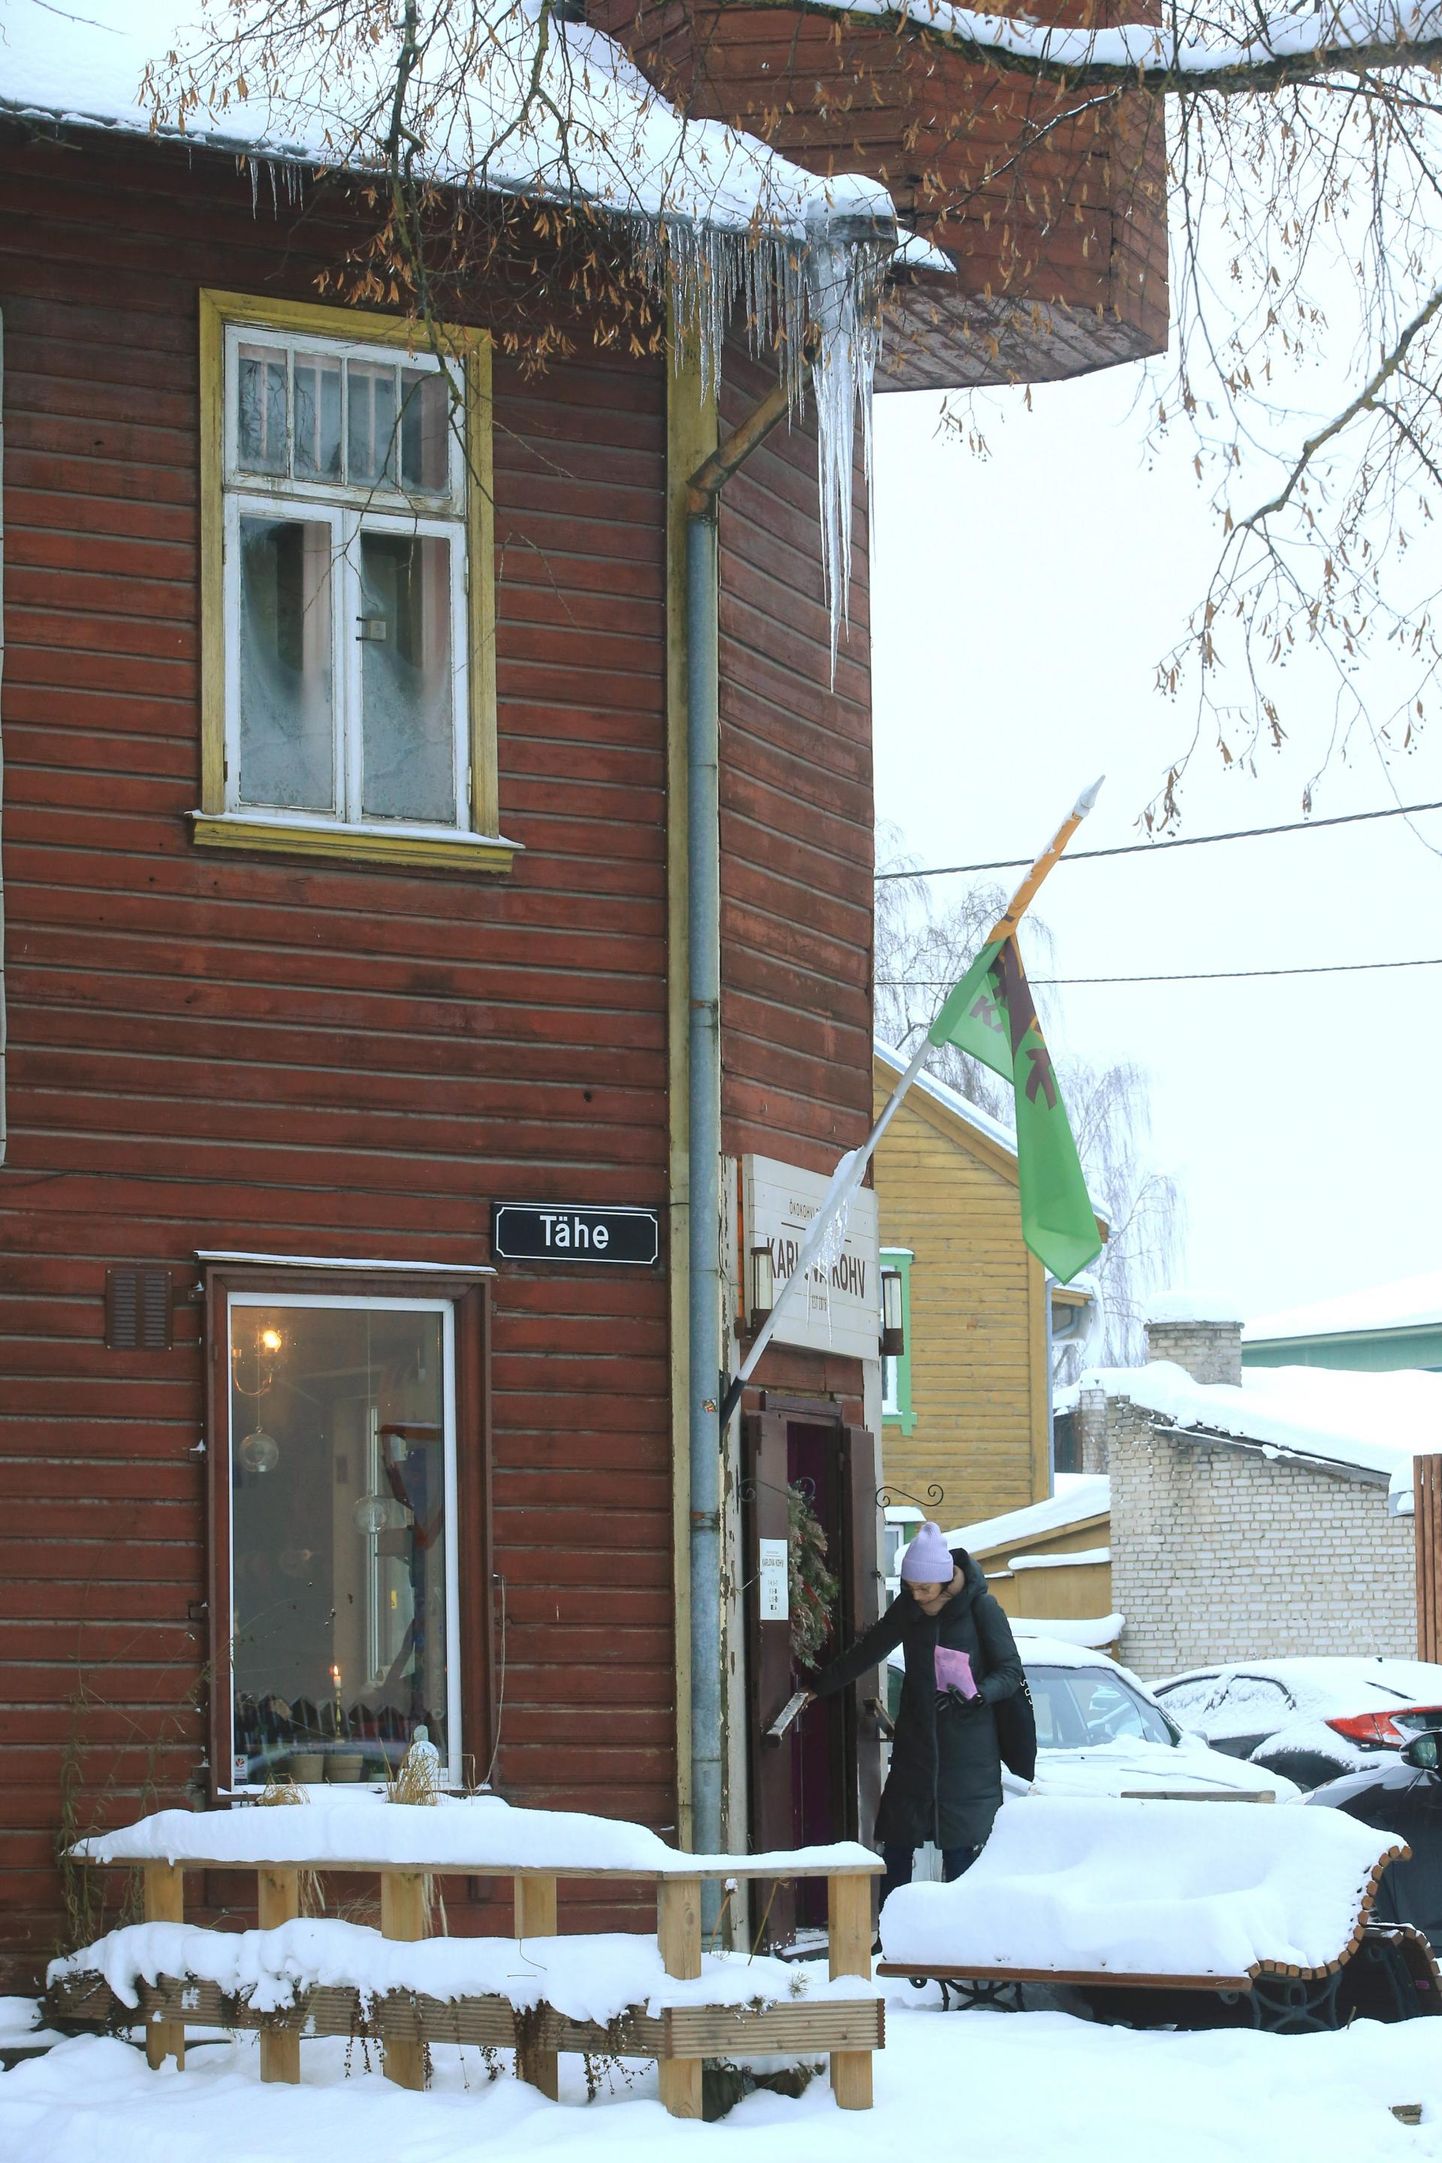 Jääpurikad Tähe 63 maja räästas olid reede pärastlõunal kurjakuulutavad, sest need ripuvad Karlova Kohvi sissepääsu vahetus läheduses. Algavaks nädalaks lubab ilmateade sula ning katustel olev lumi ja purikad lähevad liikvele.